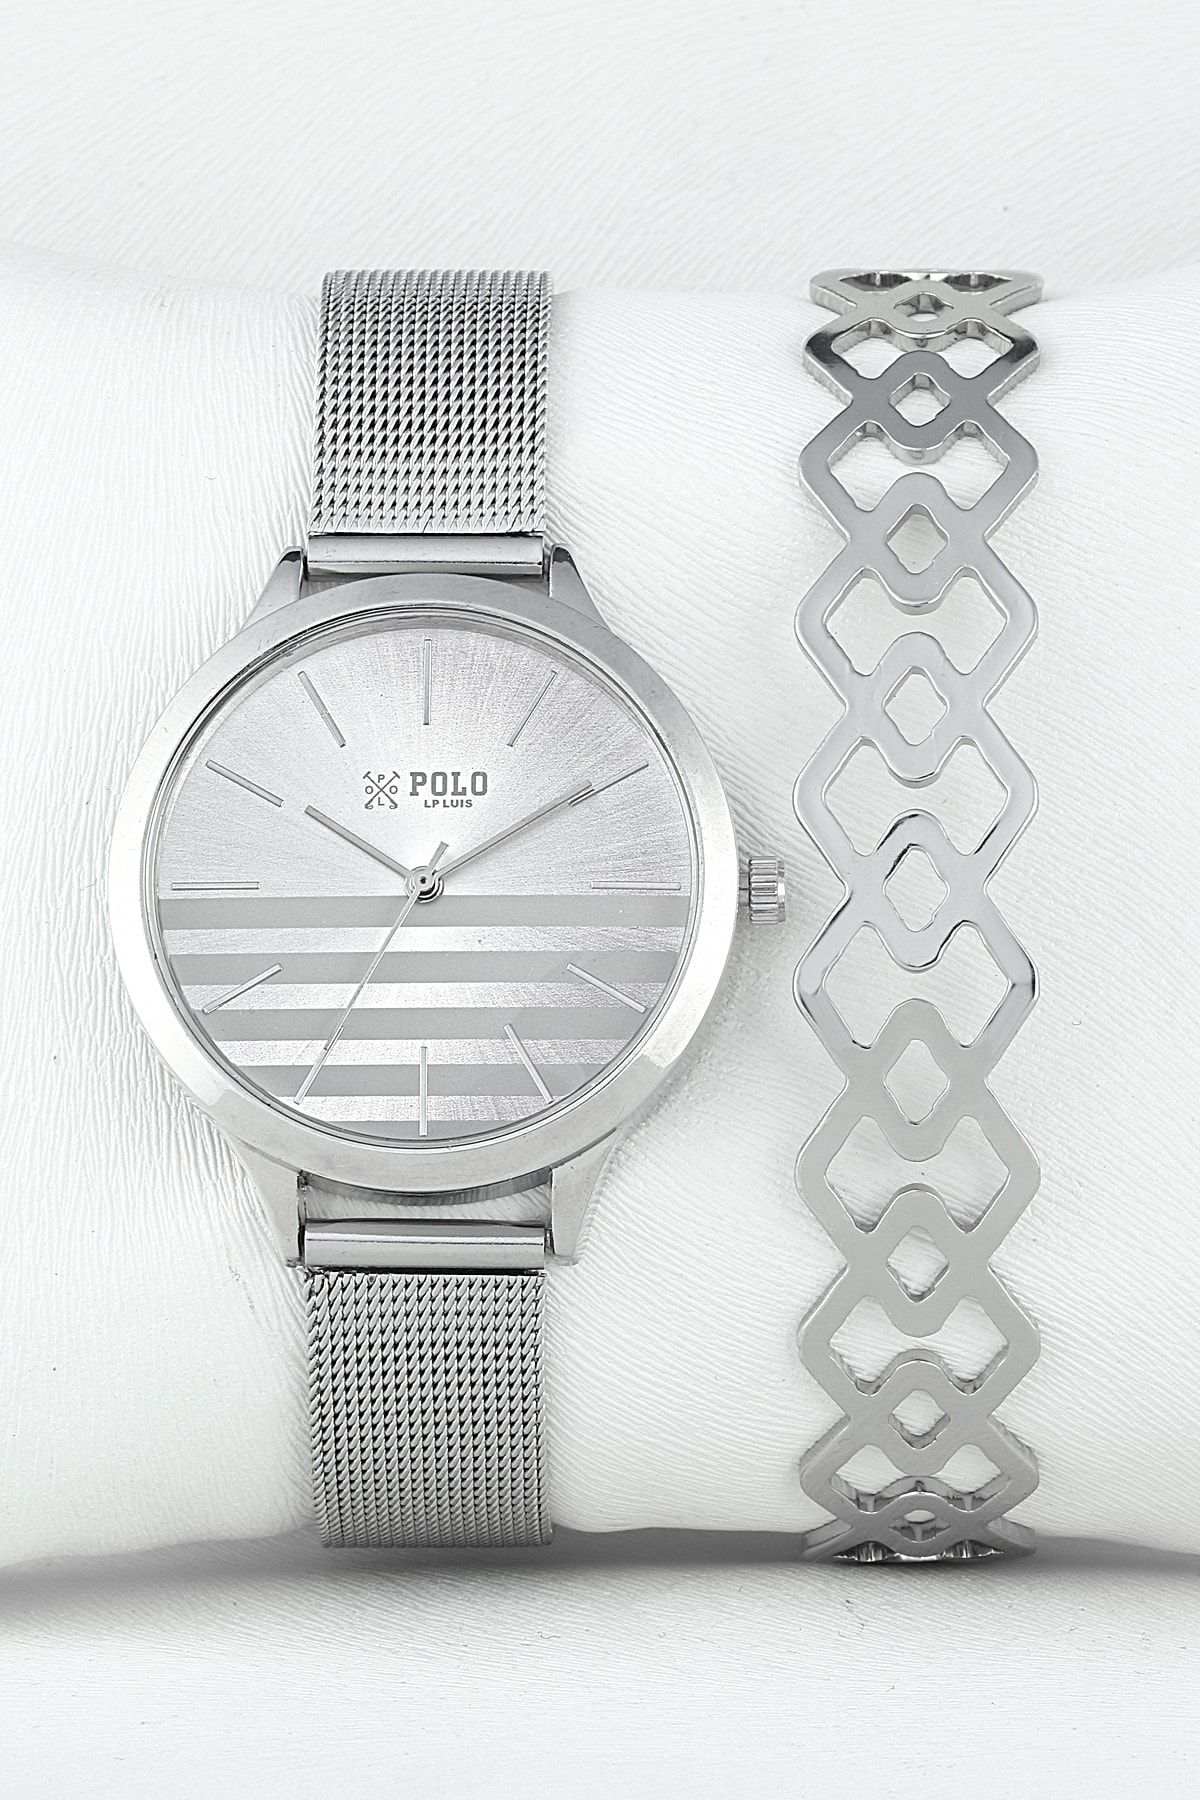 Luis Polo Kadın Gümüş Saat Bileklik Seti P1191h-bh-kmb-lux-05